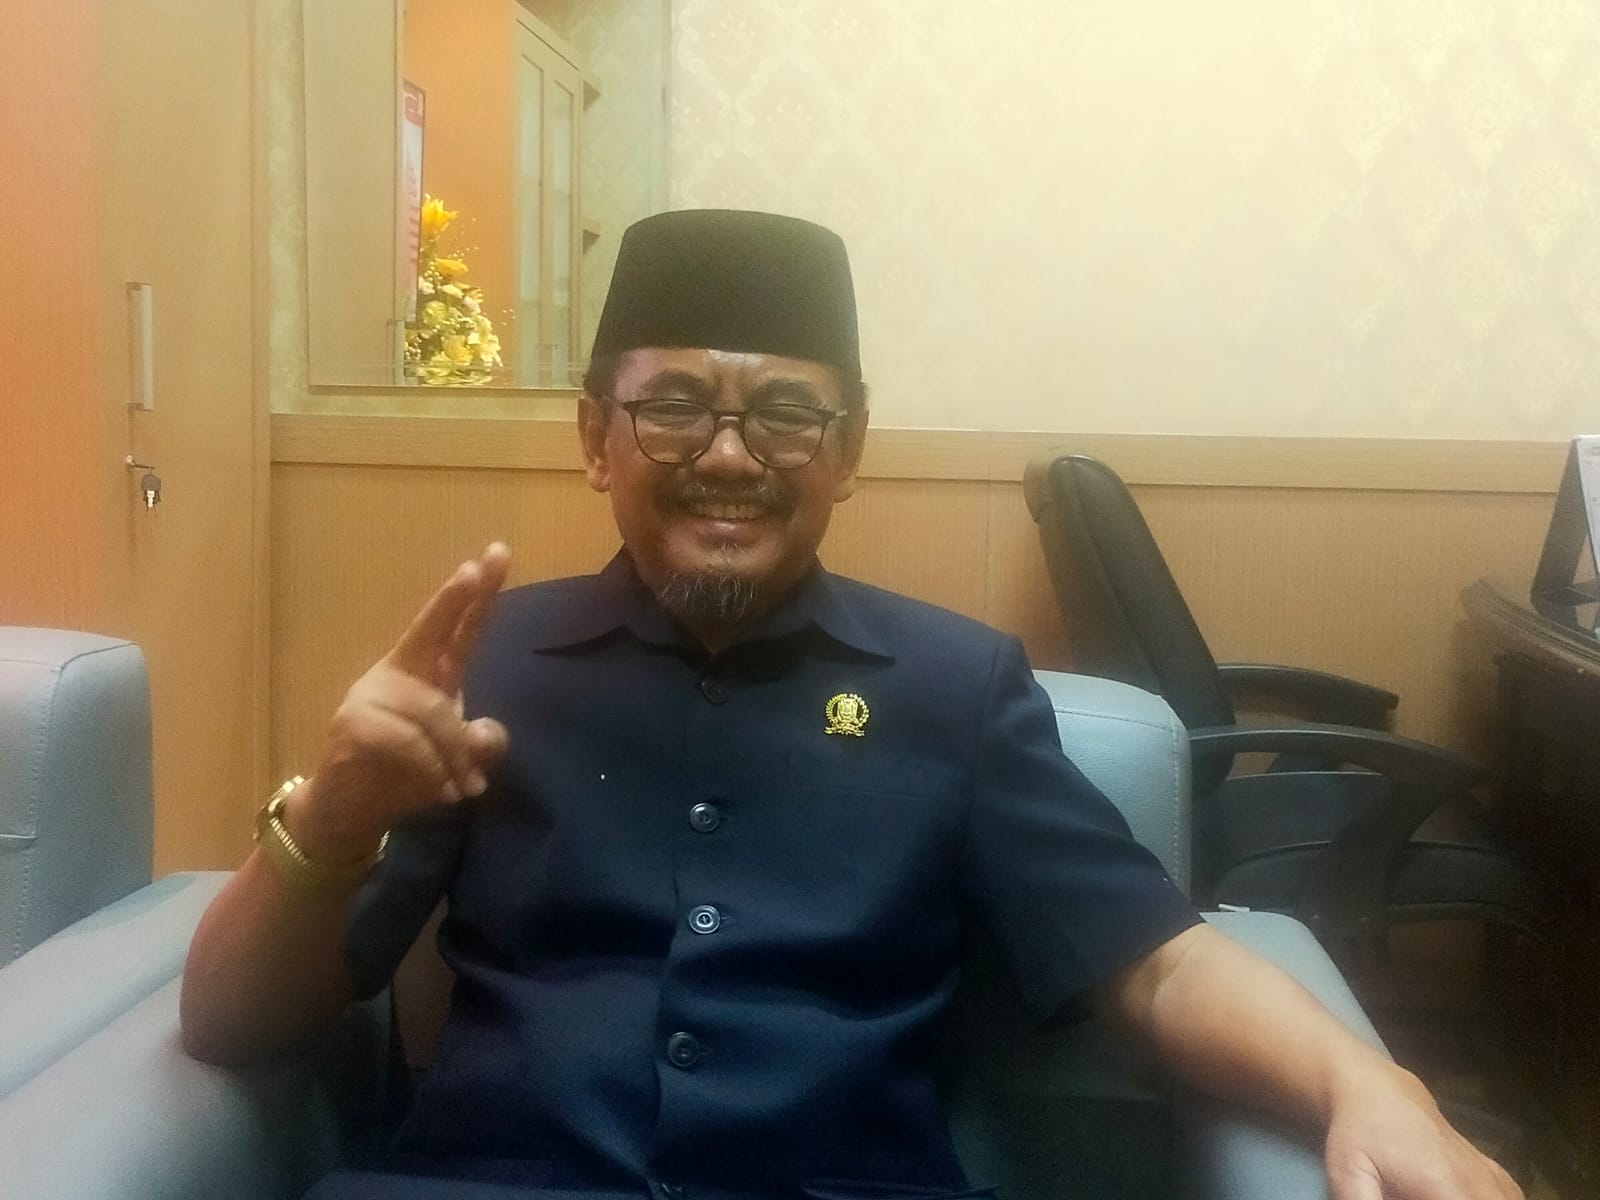 Anggota komisi B DPRD Jawa Timur Noer Soetjipto